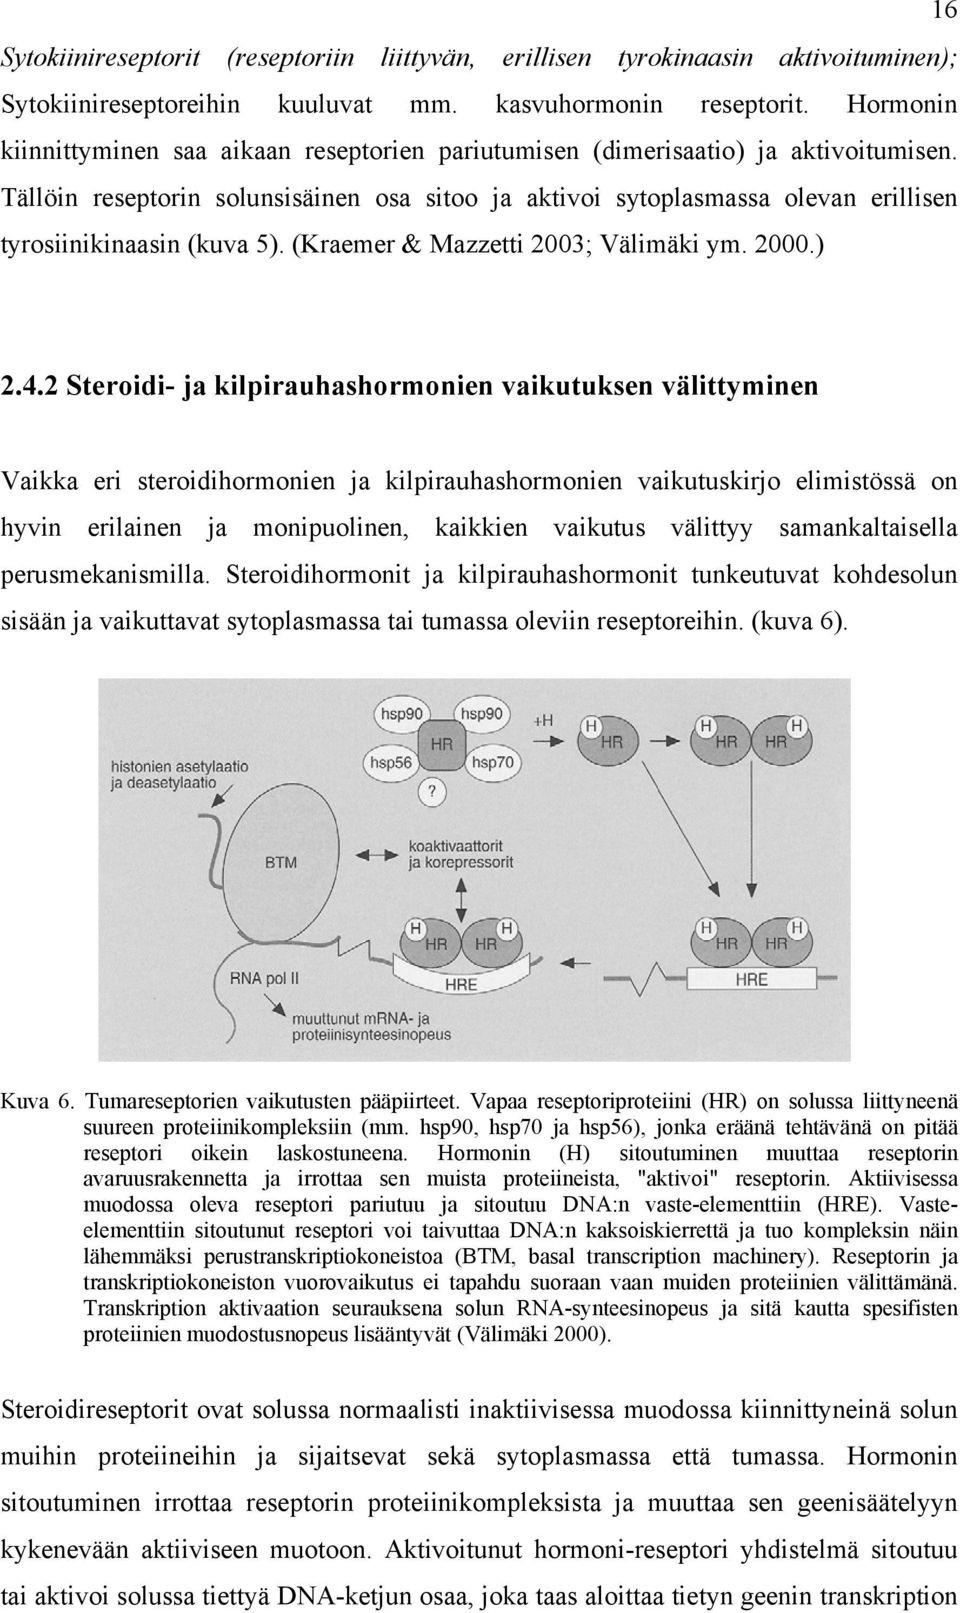 Tällöin reseptorin solunsisäinen osa sitoo ja aktivoi sytoplasmassa olevan erillisen tyrosiinikinaasin (kuva 5). (Kraemer & Mazzetti 2003; Välimäki ym. 2000.) 2.4.